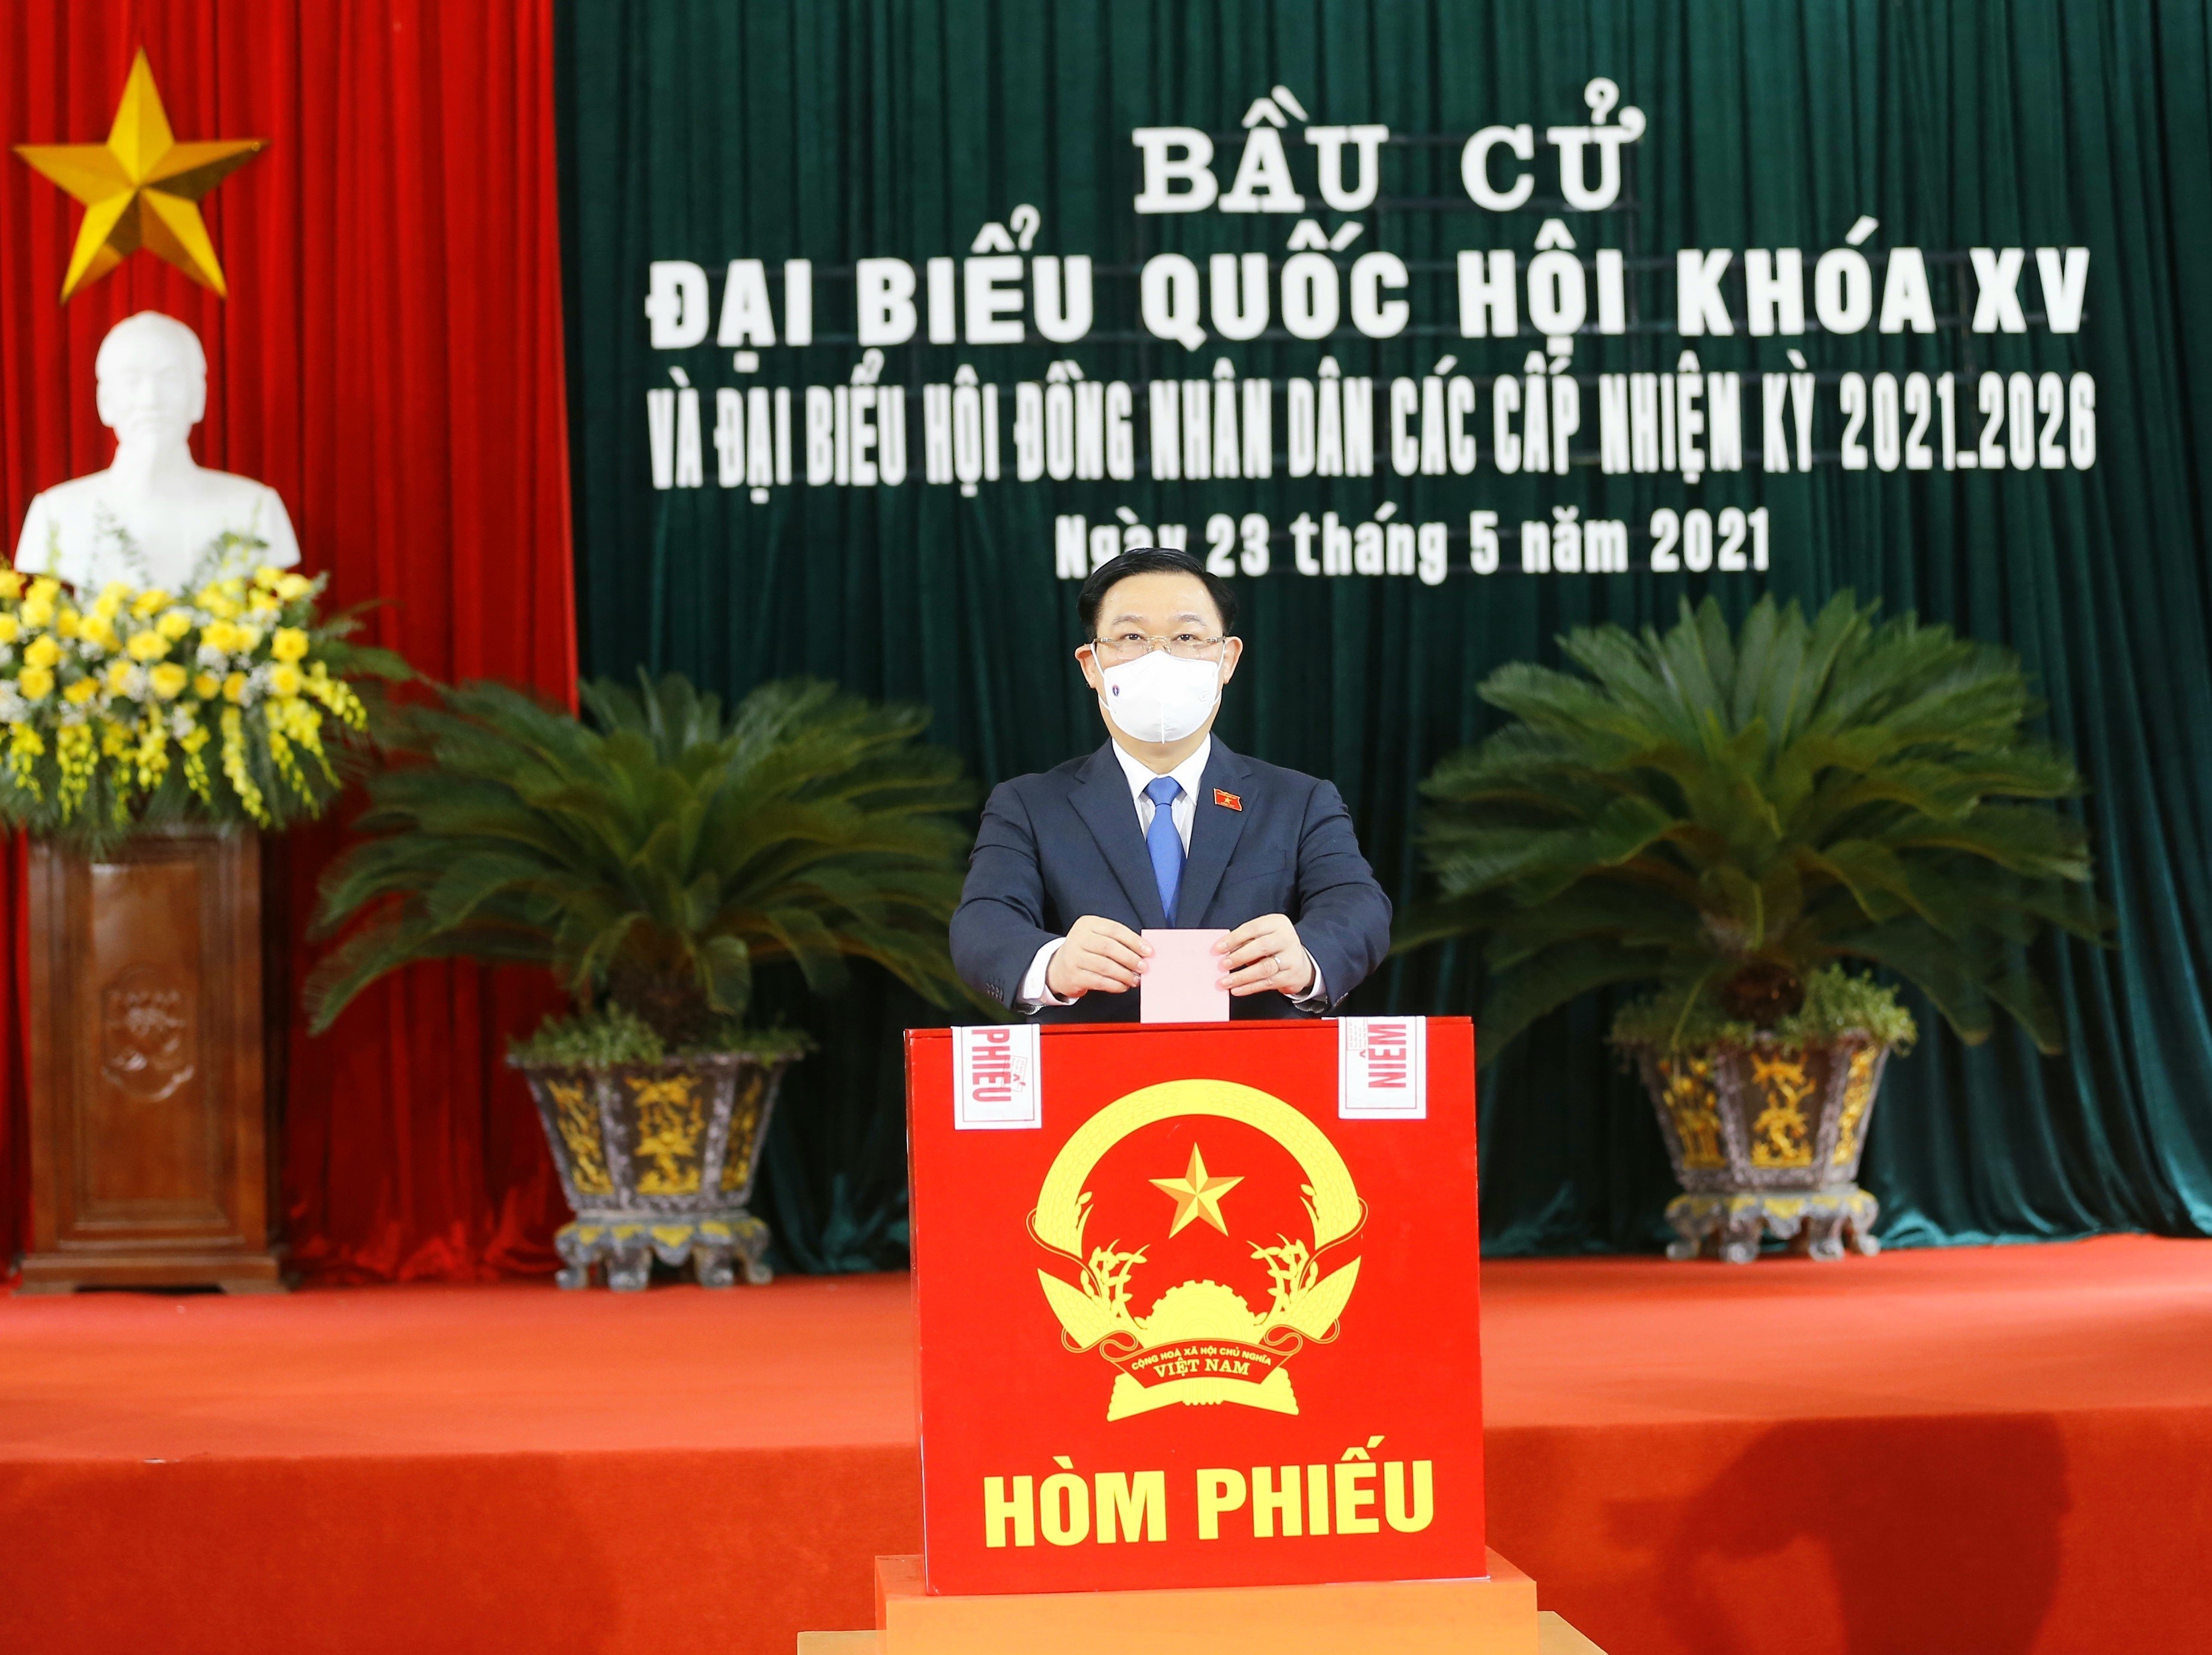 NA Chairman Vuong Dinh Hue comes to poll in Hai Phong hinh anh 1